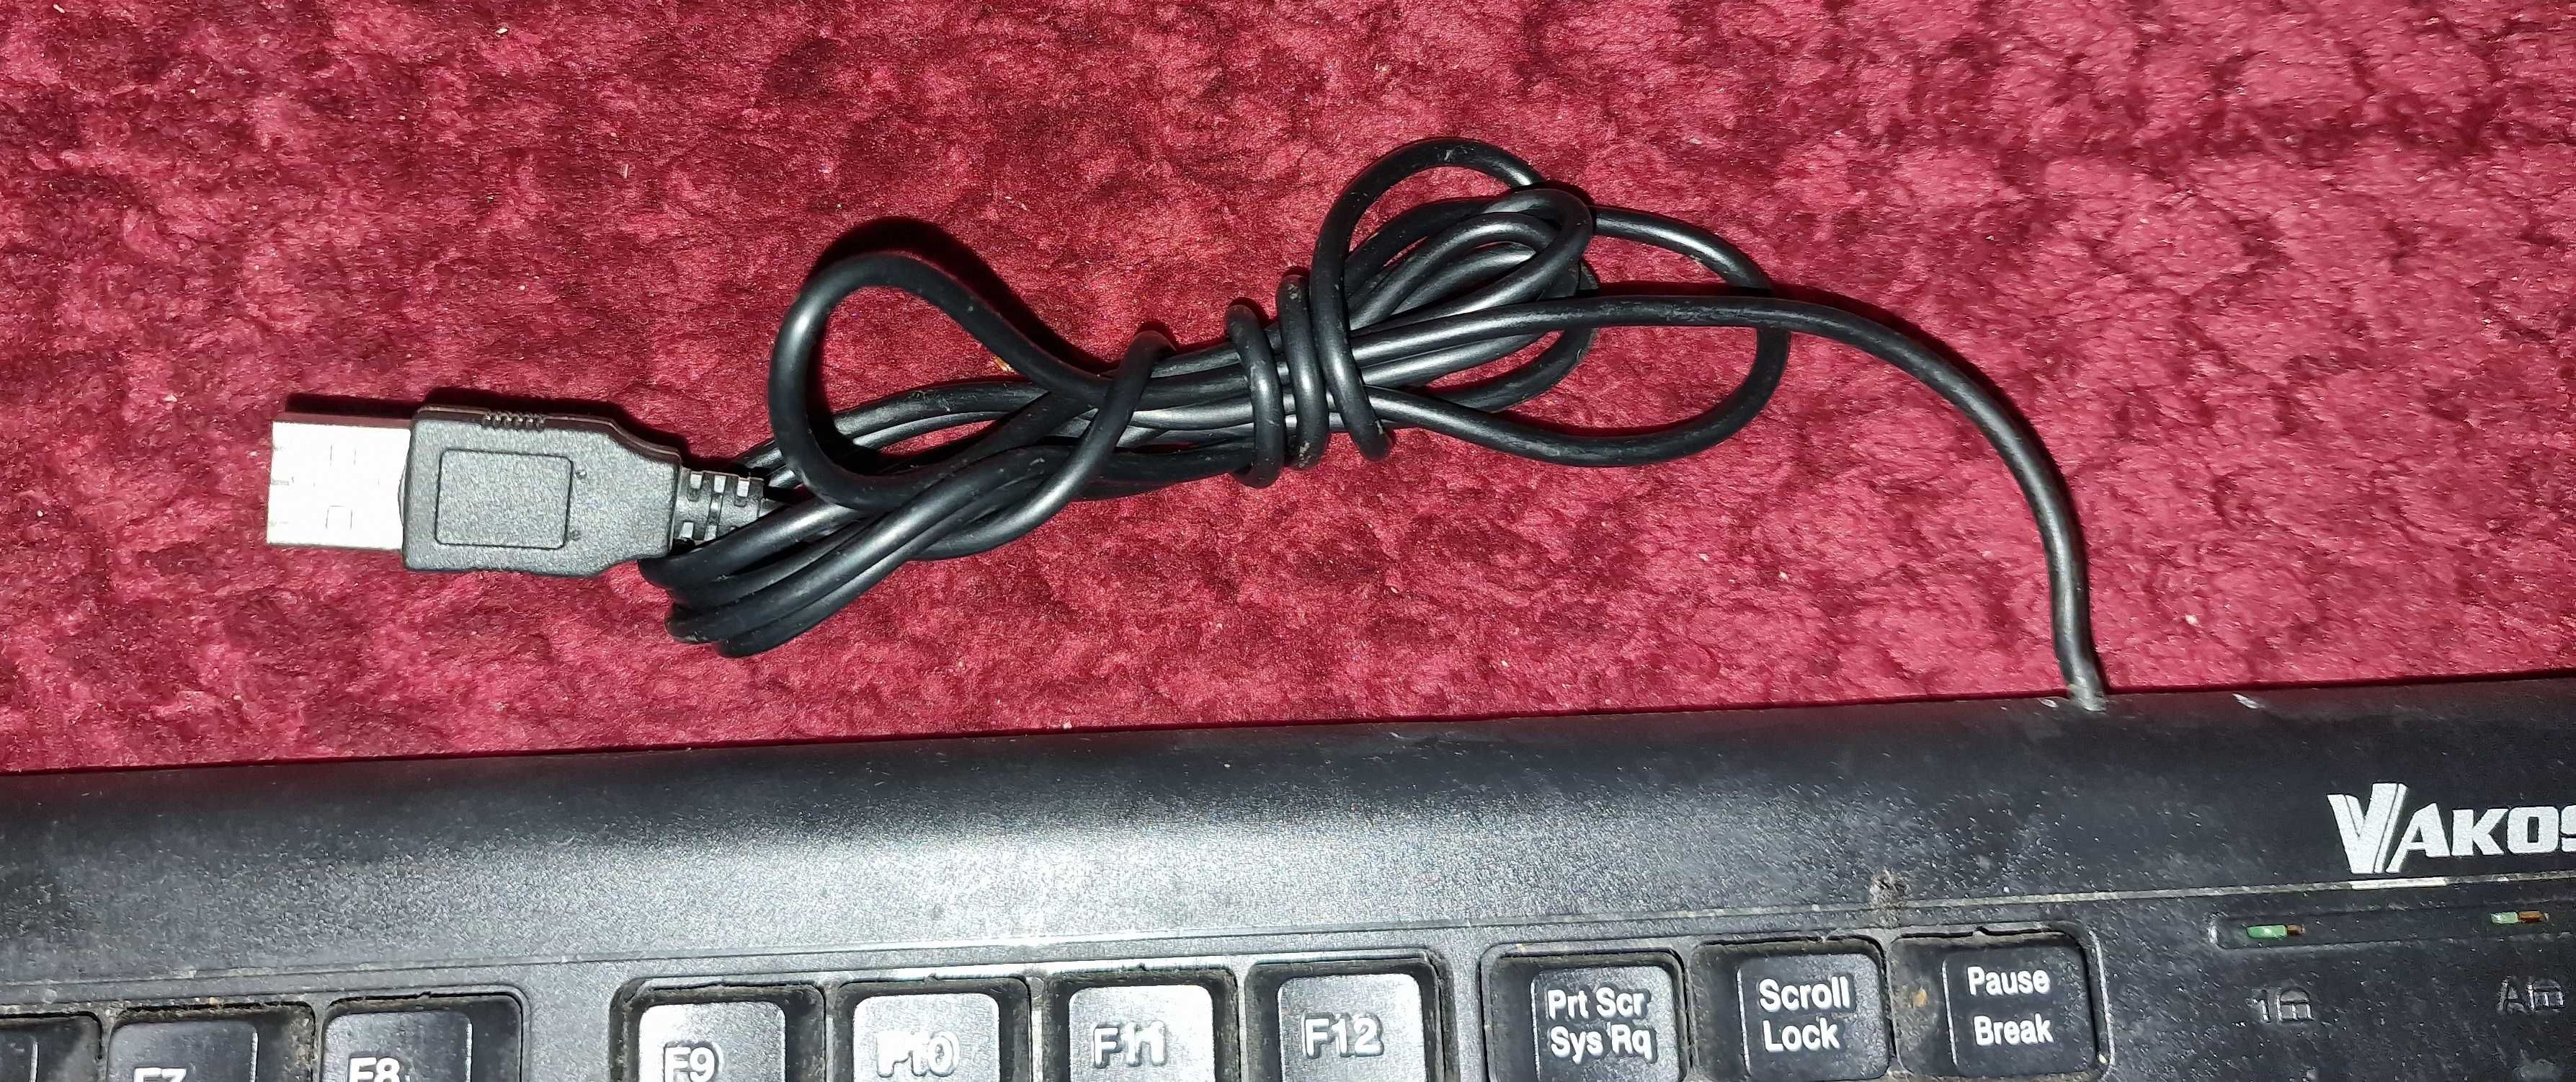 Klawiatura standardowa przewodowa czarna USB, brak 1 klawisza